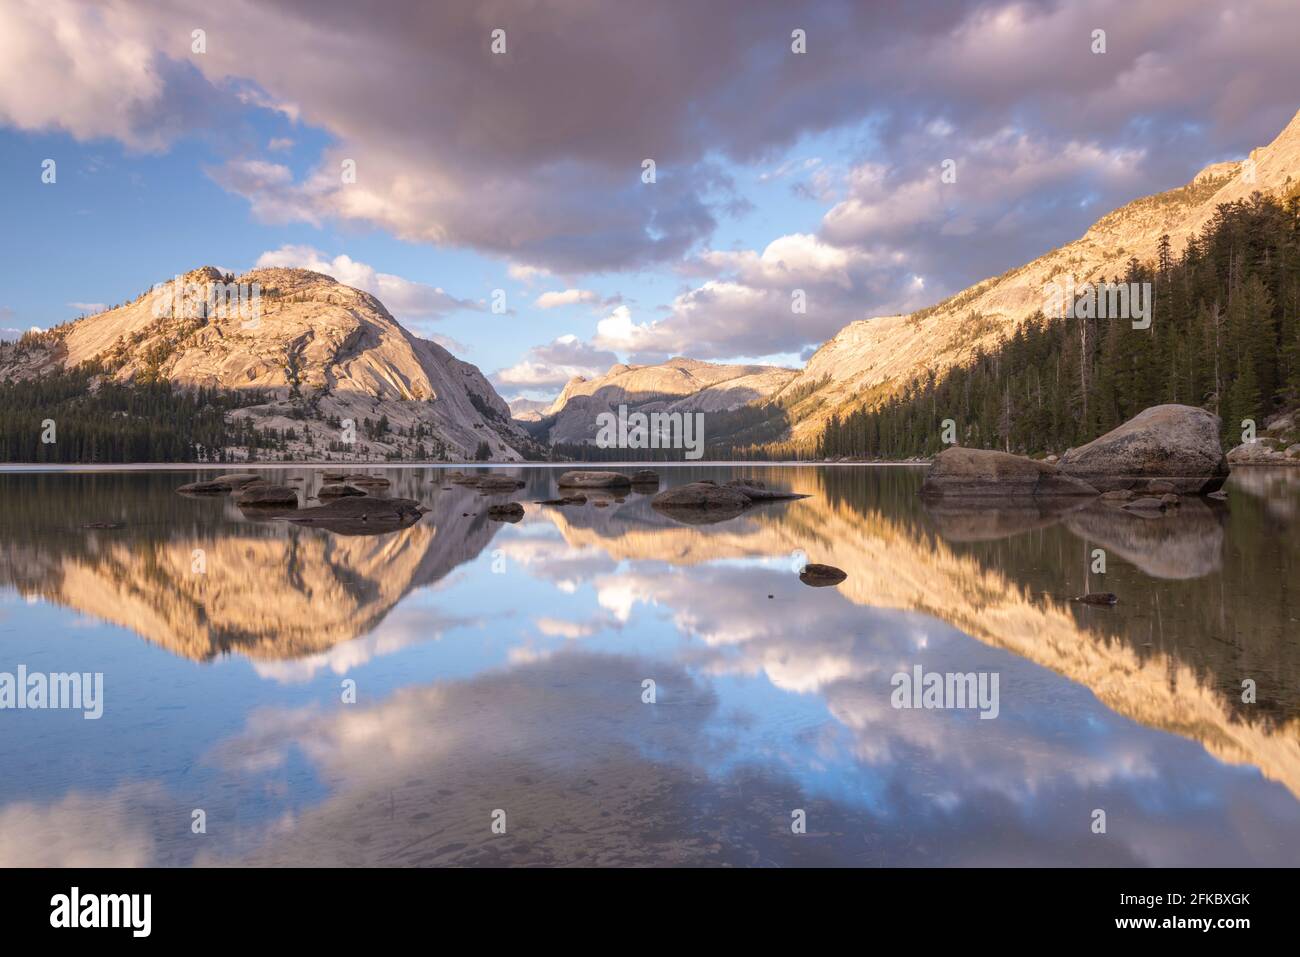 Réflexions dans le lac Tenaya dans le parc national de Yosemite, site classé au patrimoine mondial de l'UNESCO, Californie, États-Unis d'Amérique, Amérique du Nord Banque D'Images